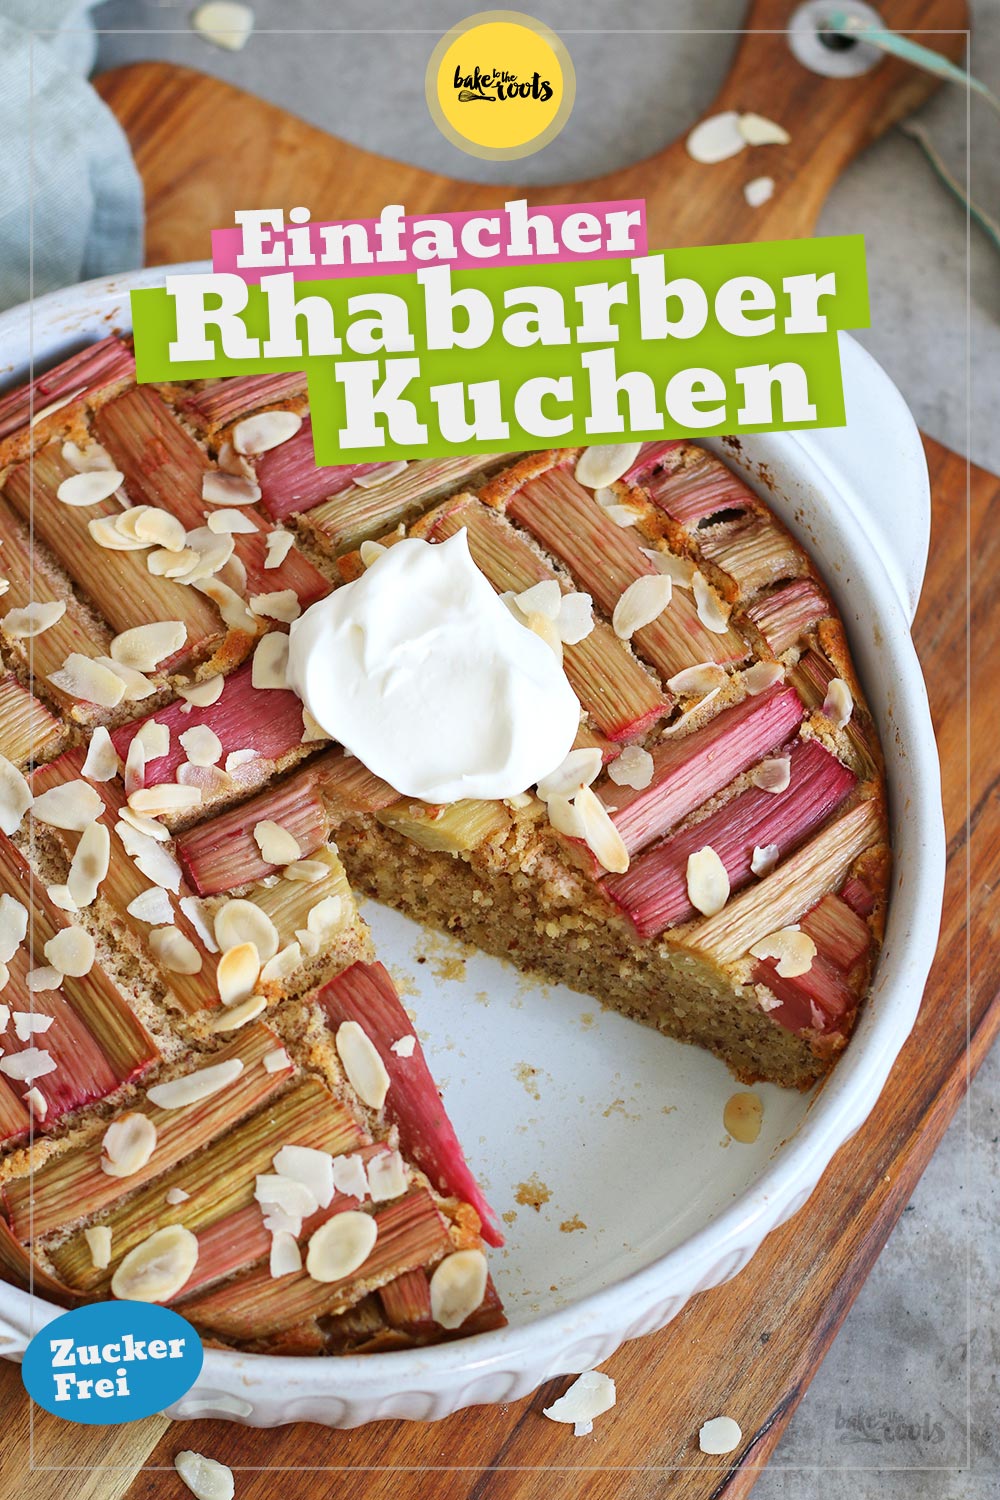 Einfacher Rhabarberkuchen (zuckerfrei) | Bake to the roots